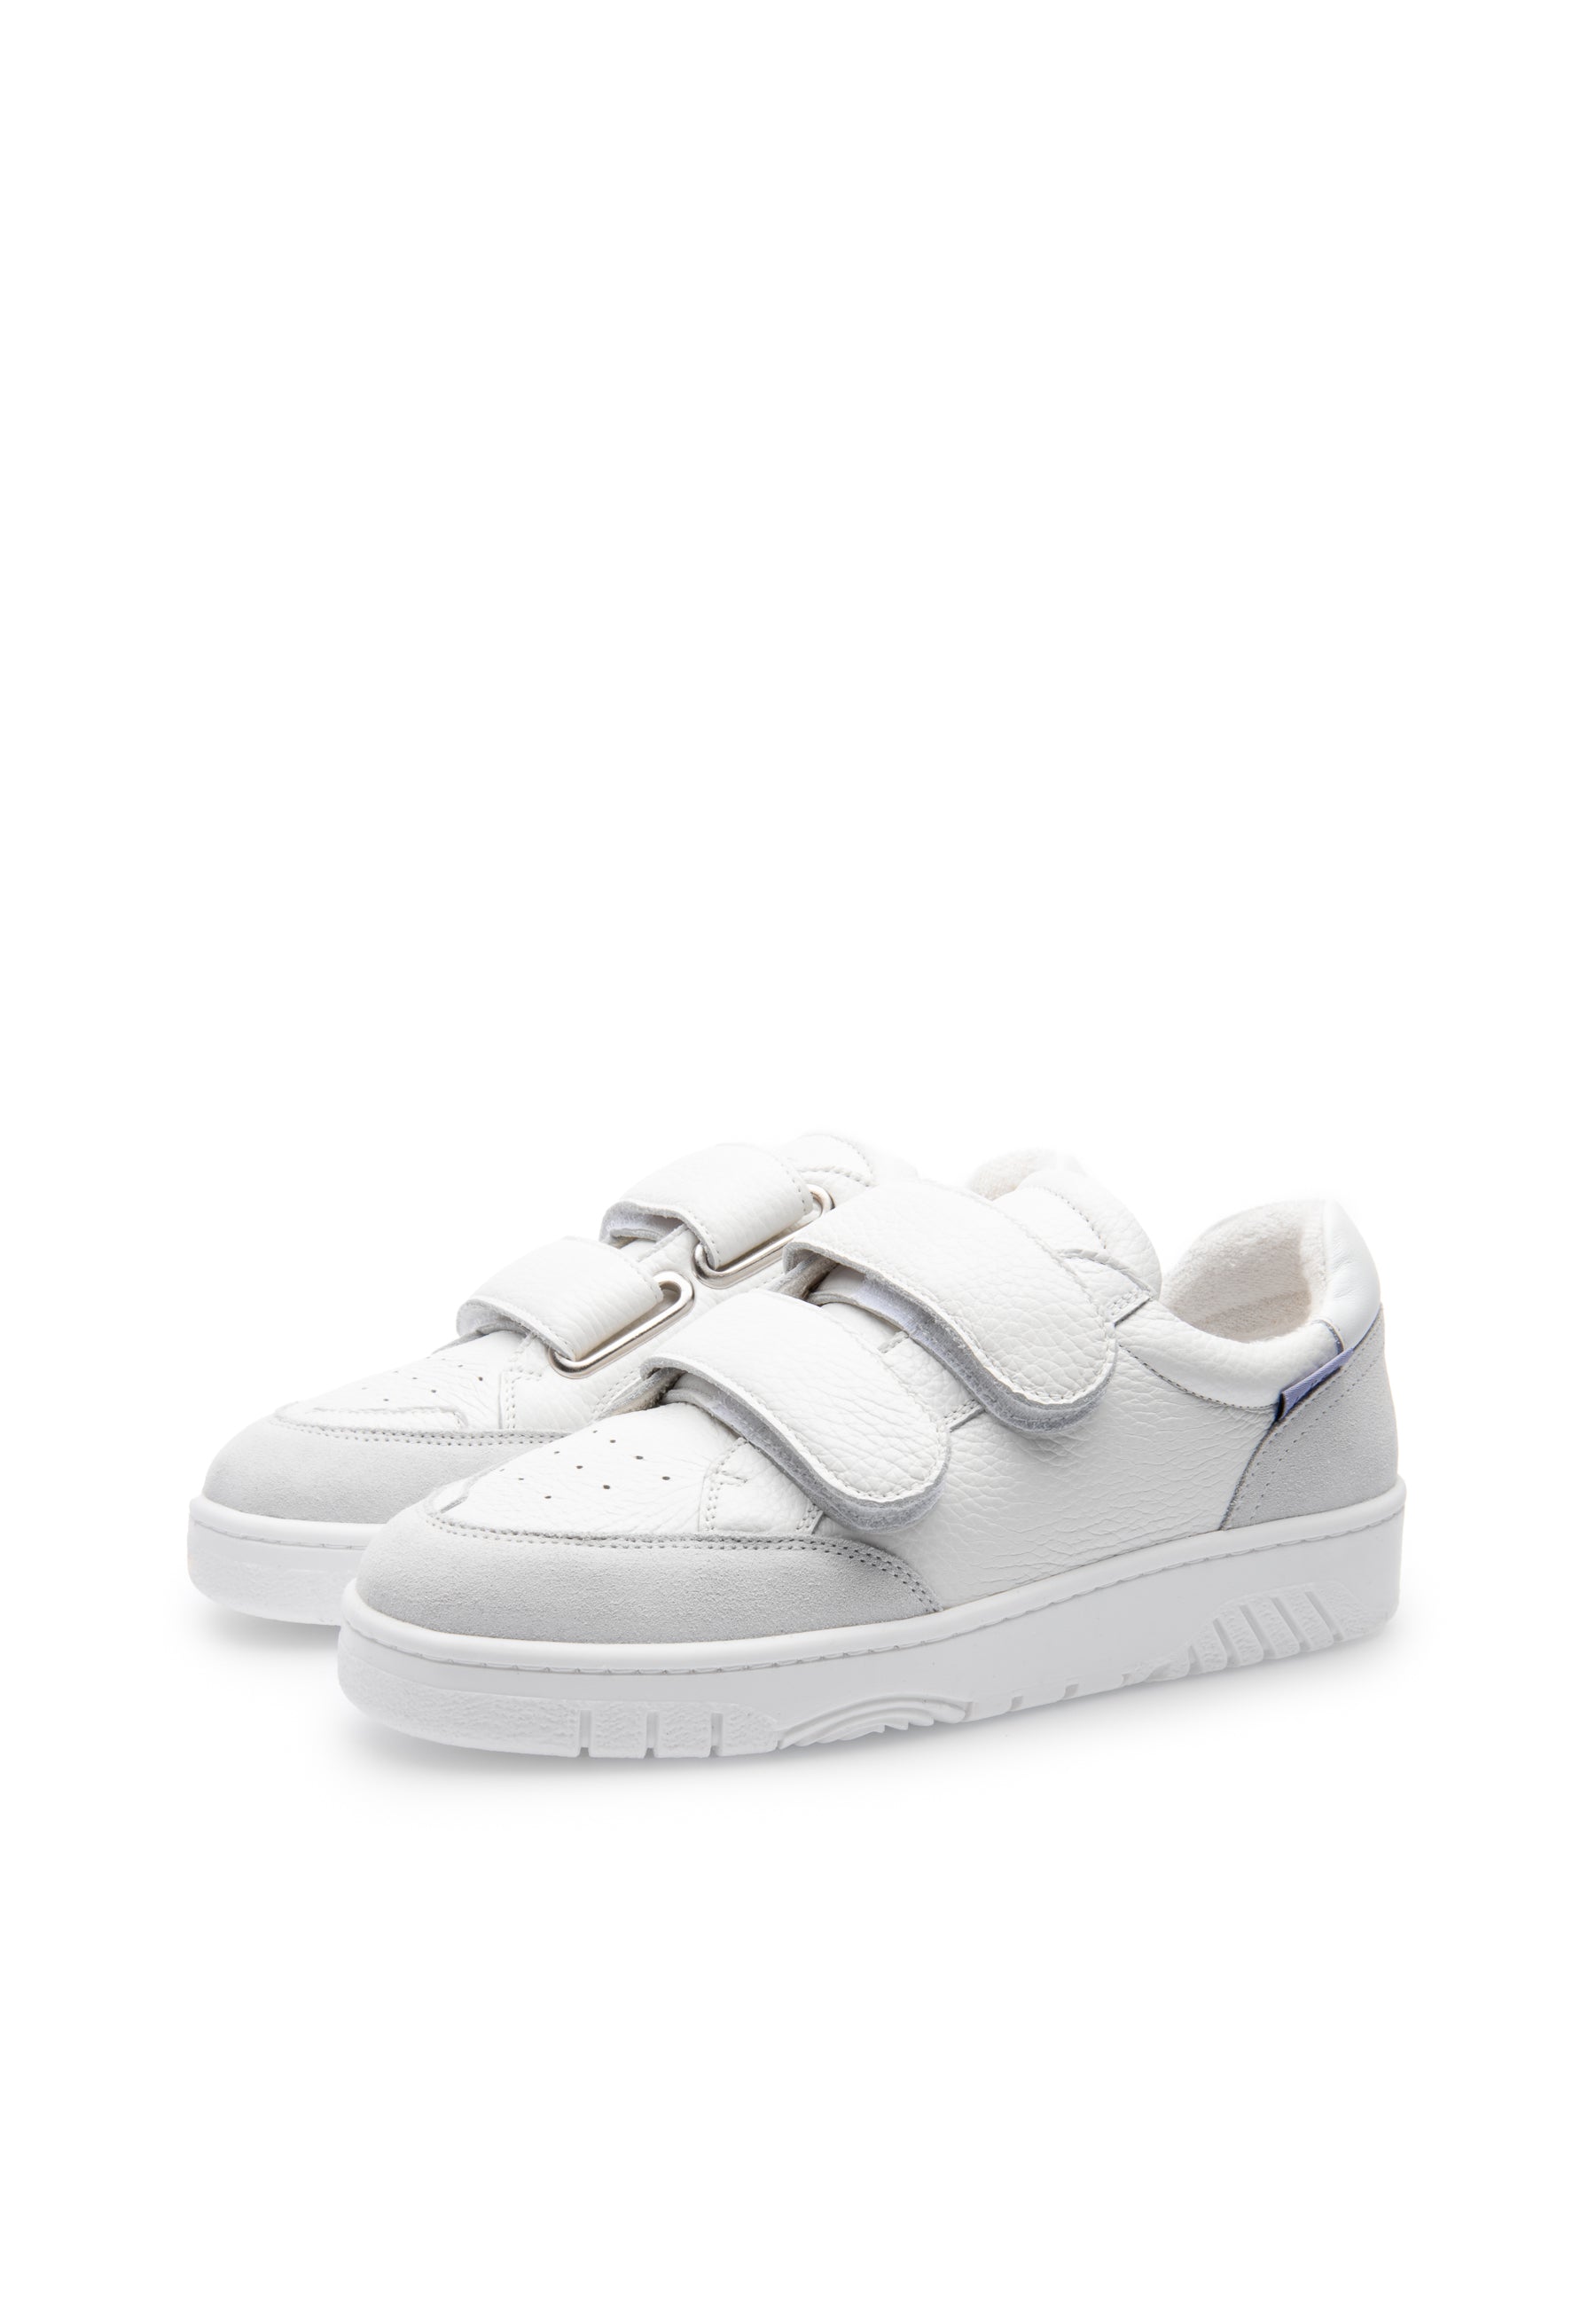 Bella White Retro Sneakers LAST1493 - 3